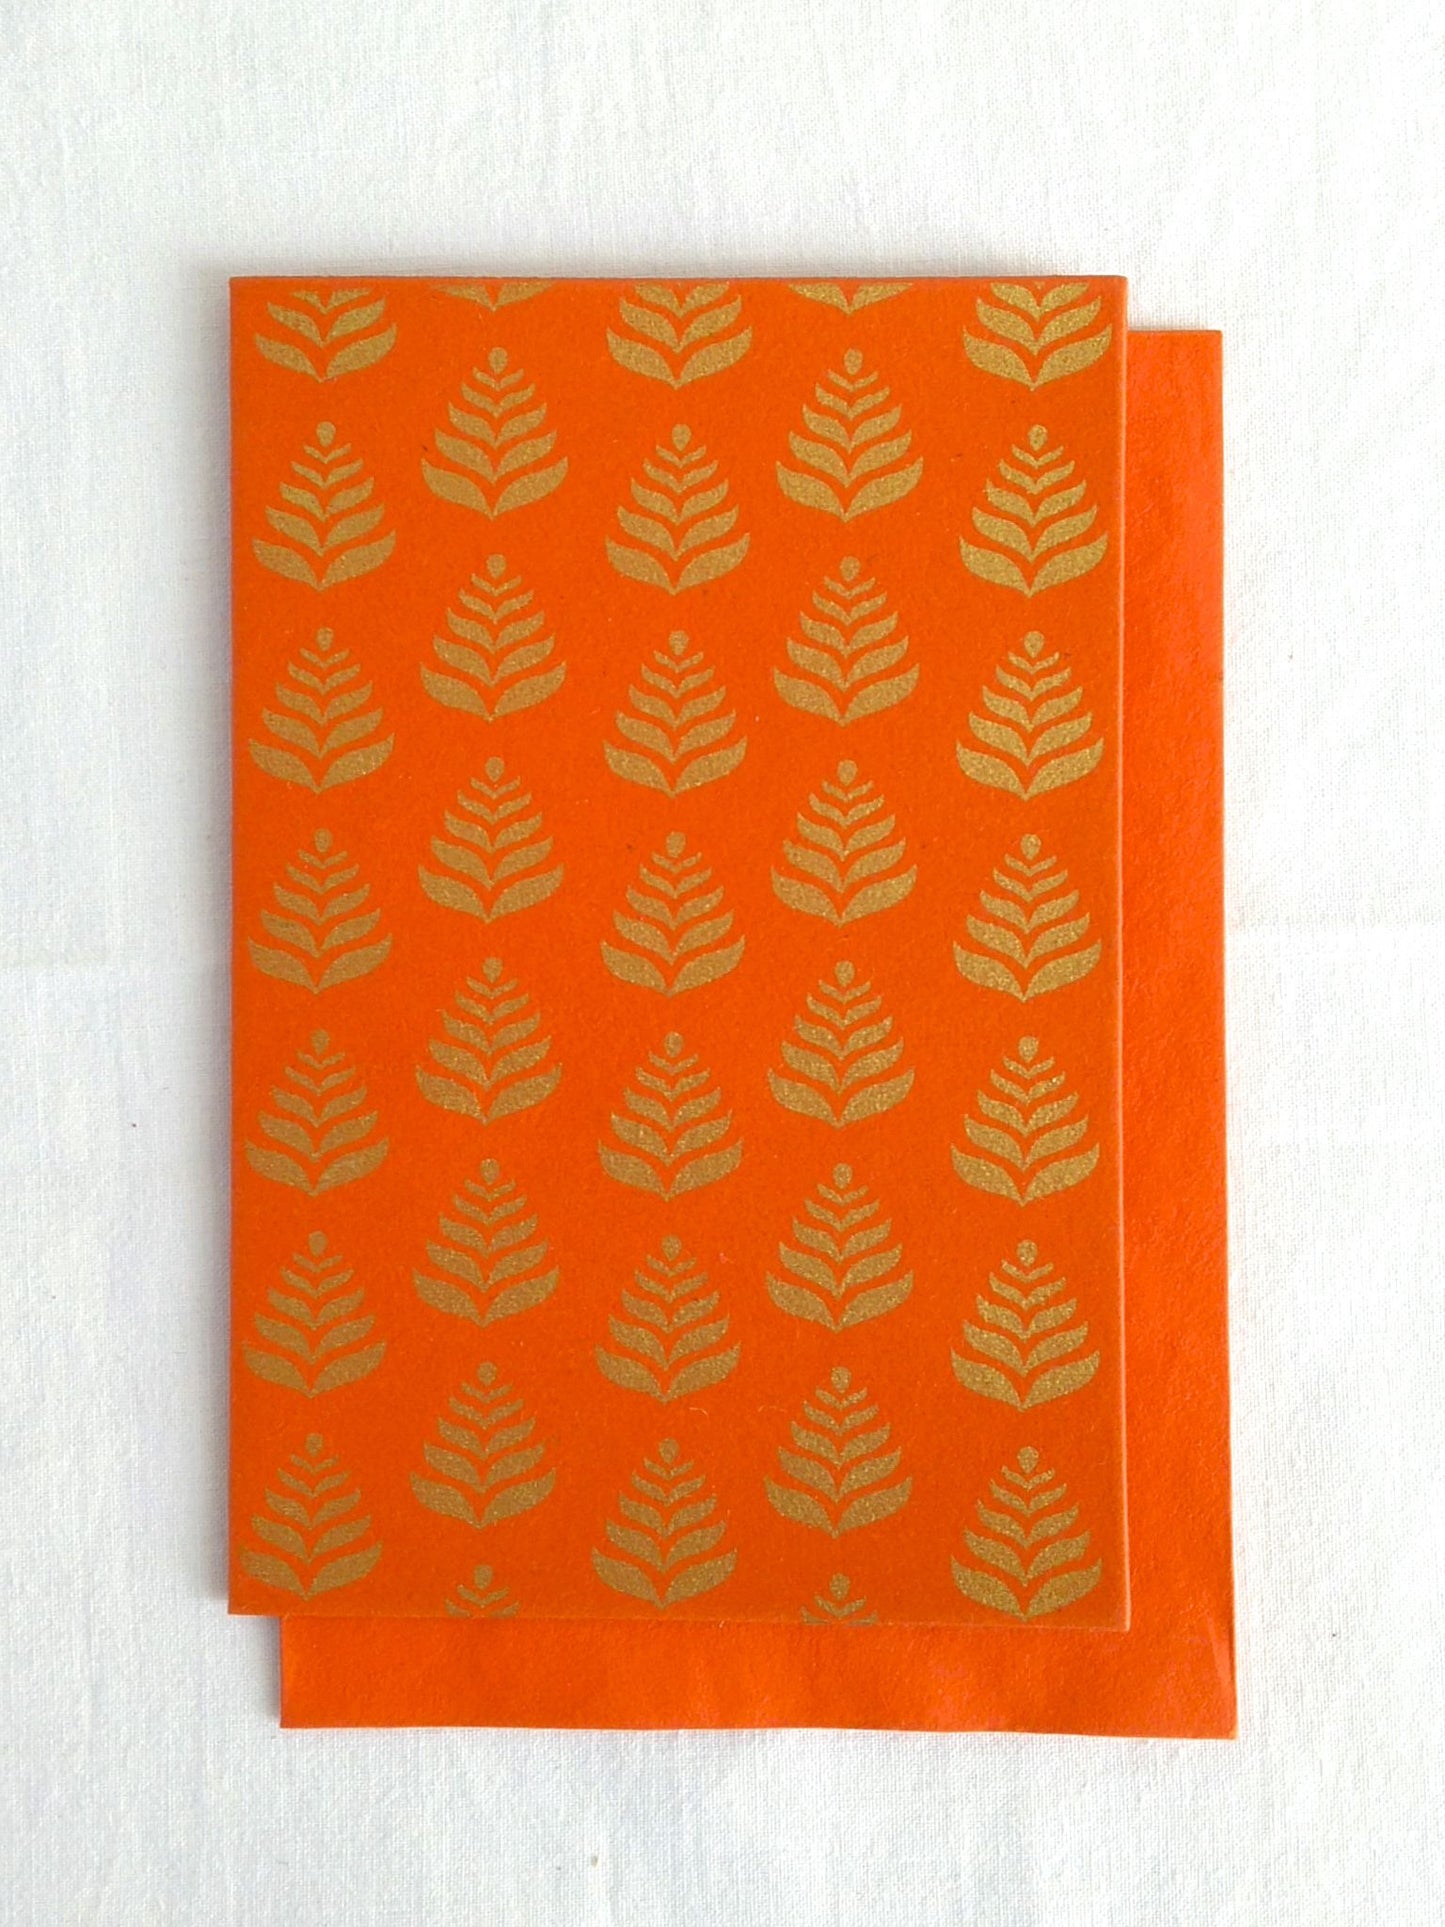 Narangi Orange - Set of 5 Gold Fern Motif Hand Block Printed Cards - An Indian Summer